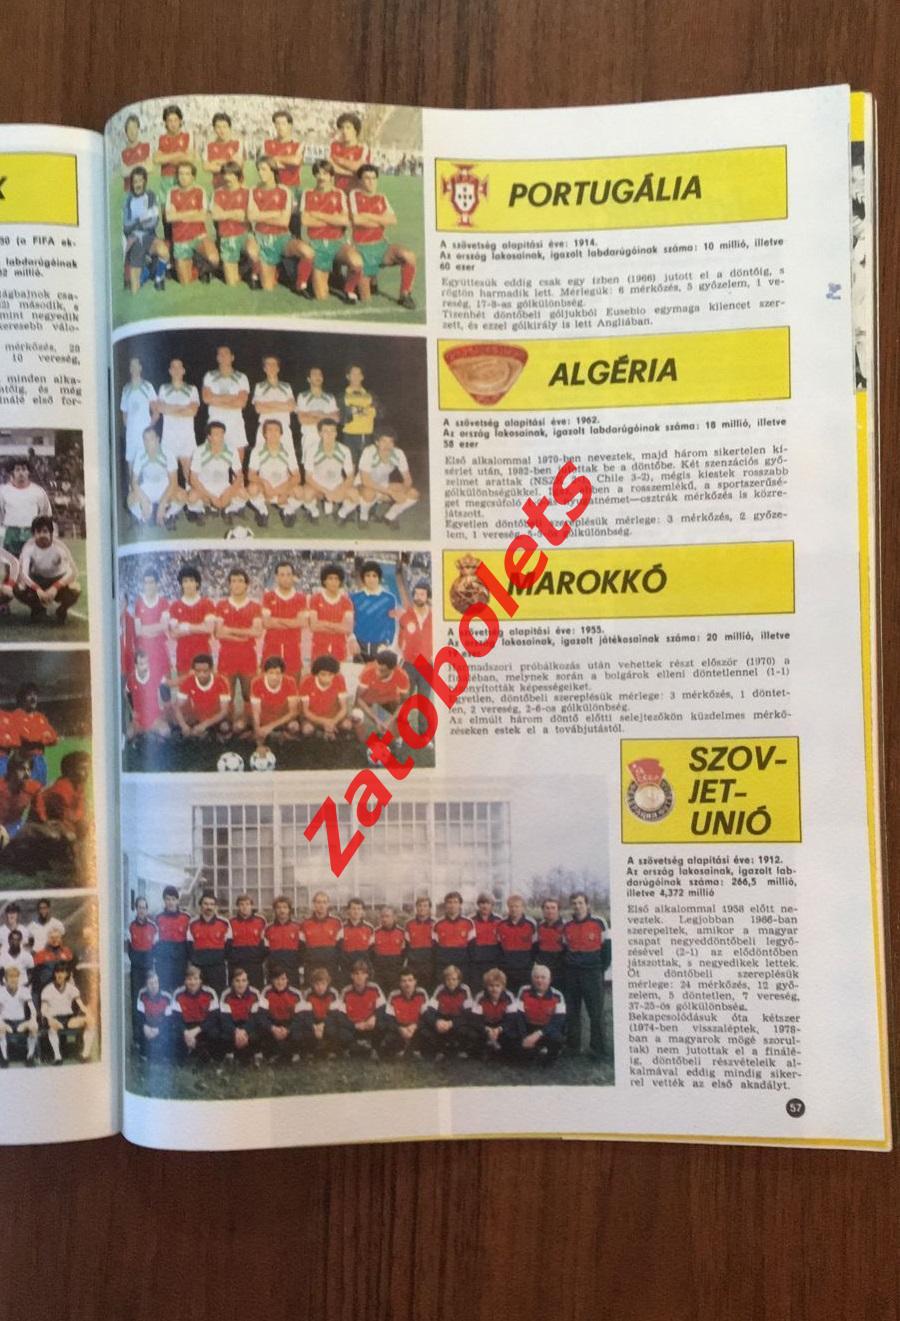 Журнал Кепеш Спорт/Kepes sport 51-53 1985 Mundial 86 Чемпионат Мира Мексика-86 3